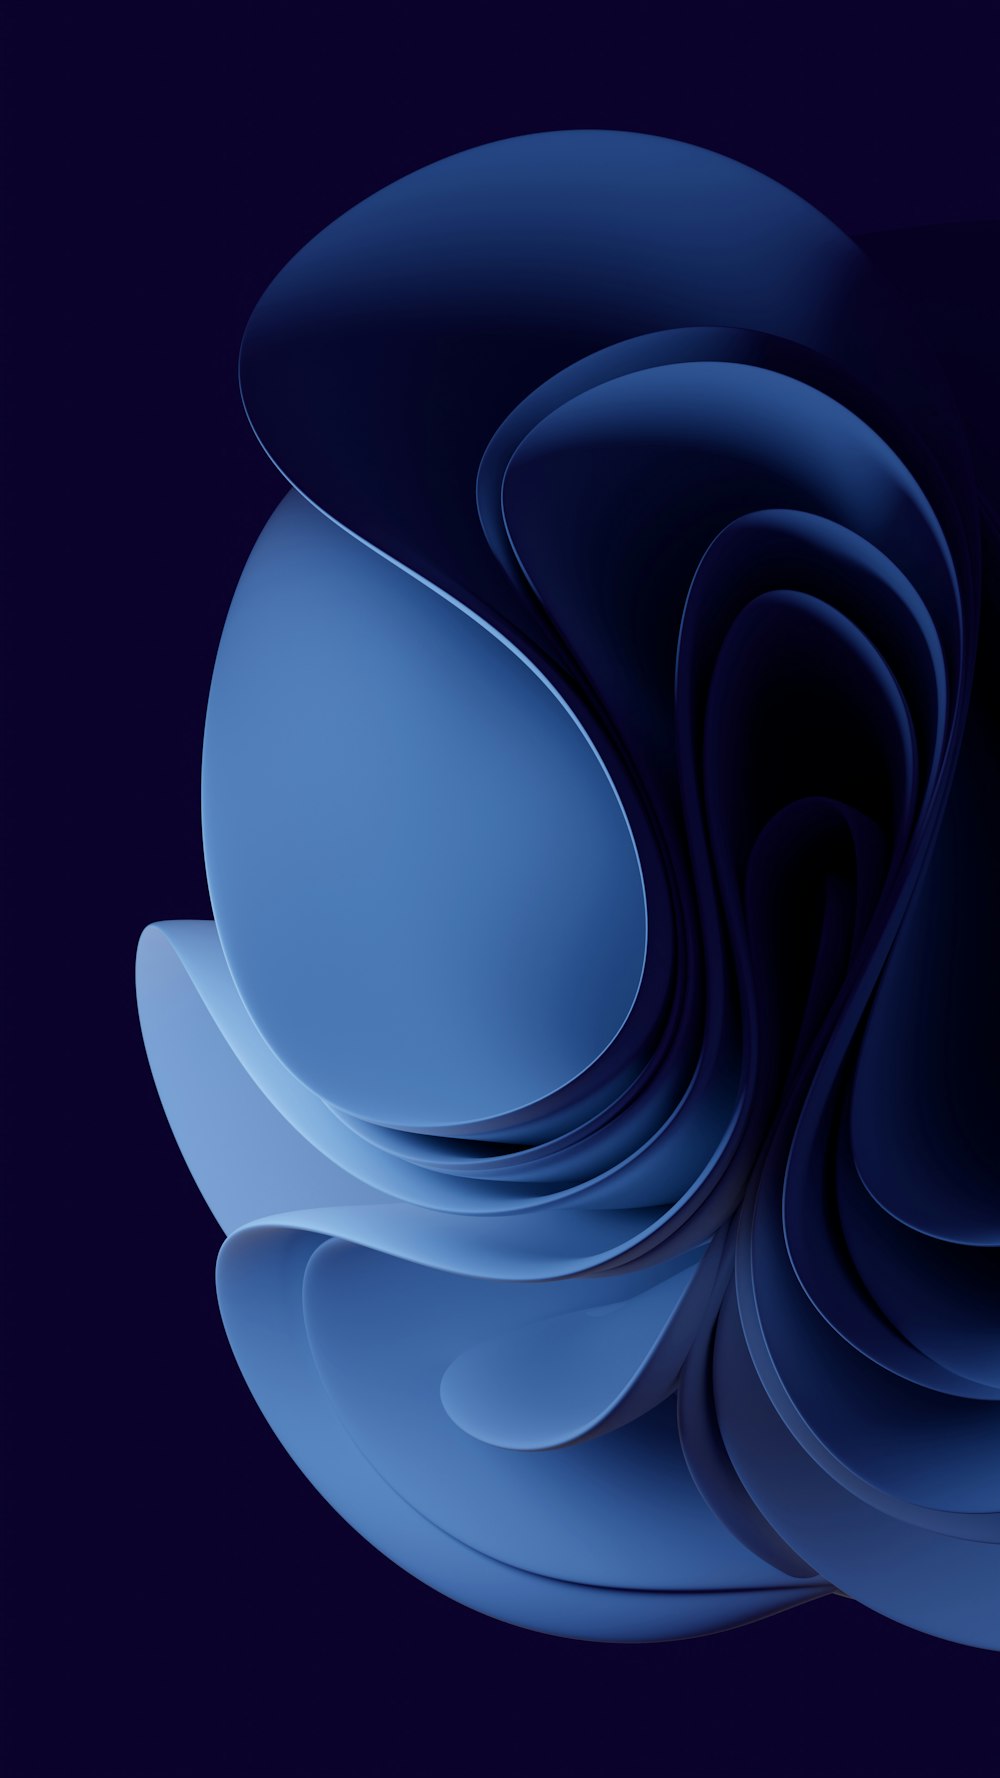 une image générée par ordinateur d’un objet bleu